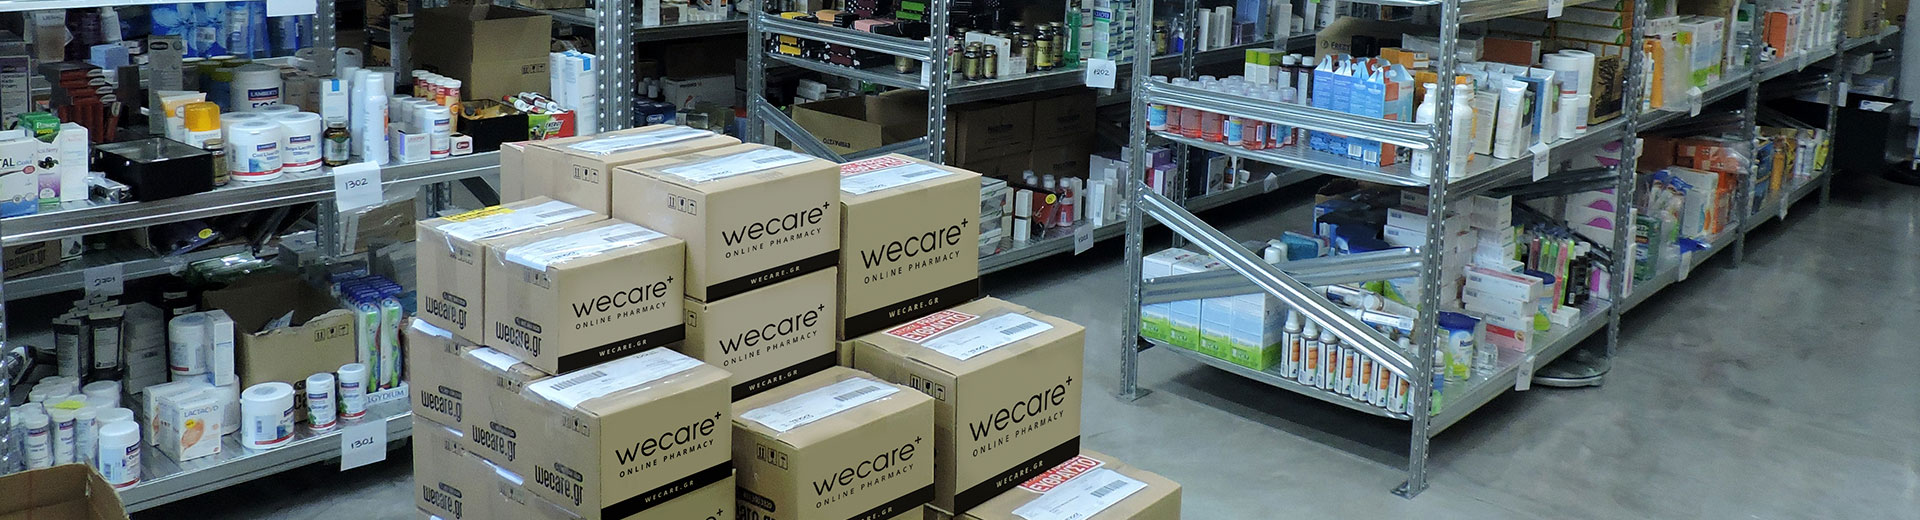 Wecare - Високи стандарти за съхранение и поддръжка на продукти